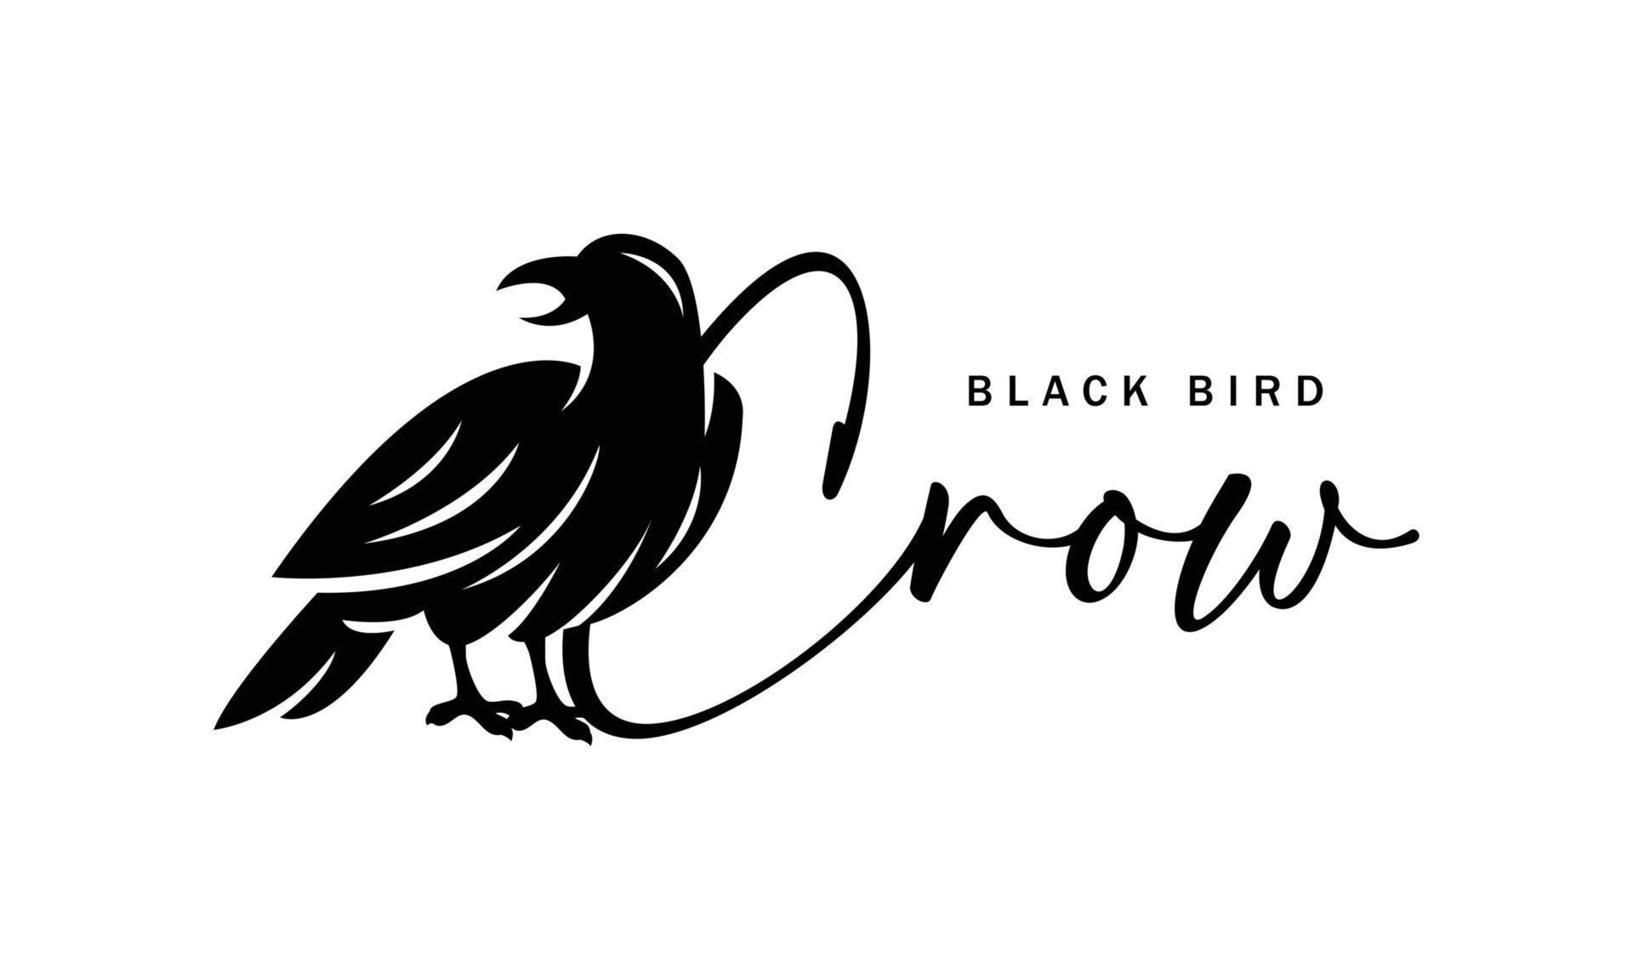 Krähe-Logo-Design - Silhouette schwarzer Vogel-Vektor-Illustration auf weißem Hintergrund - kreativer Charakter, Symbol, Symbol, Abzeichen, Emblem vektor